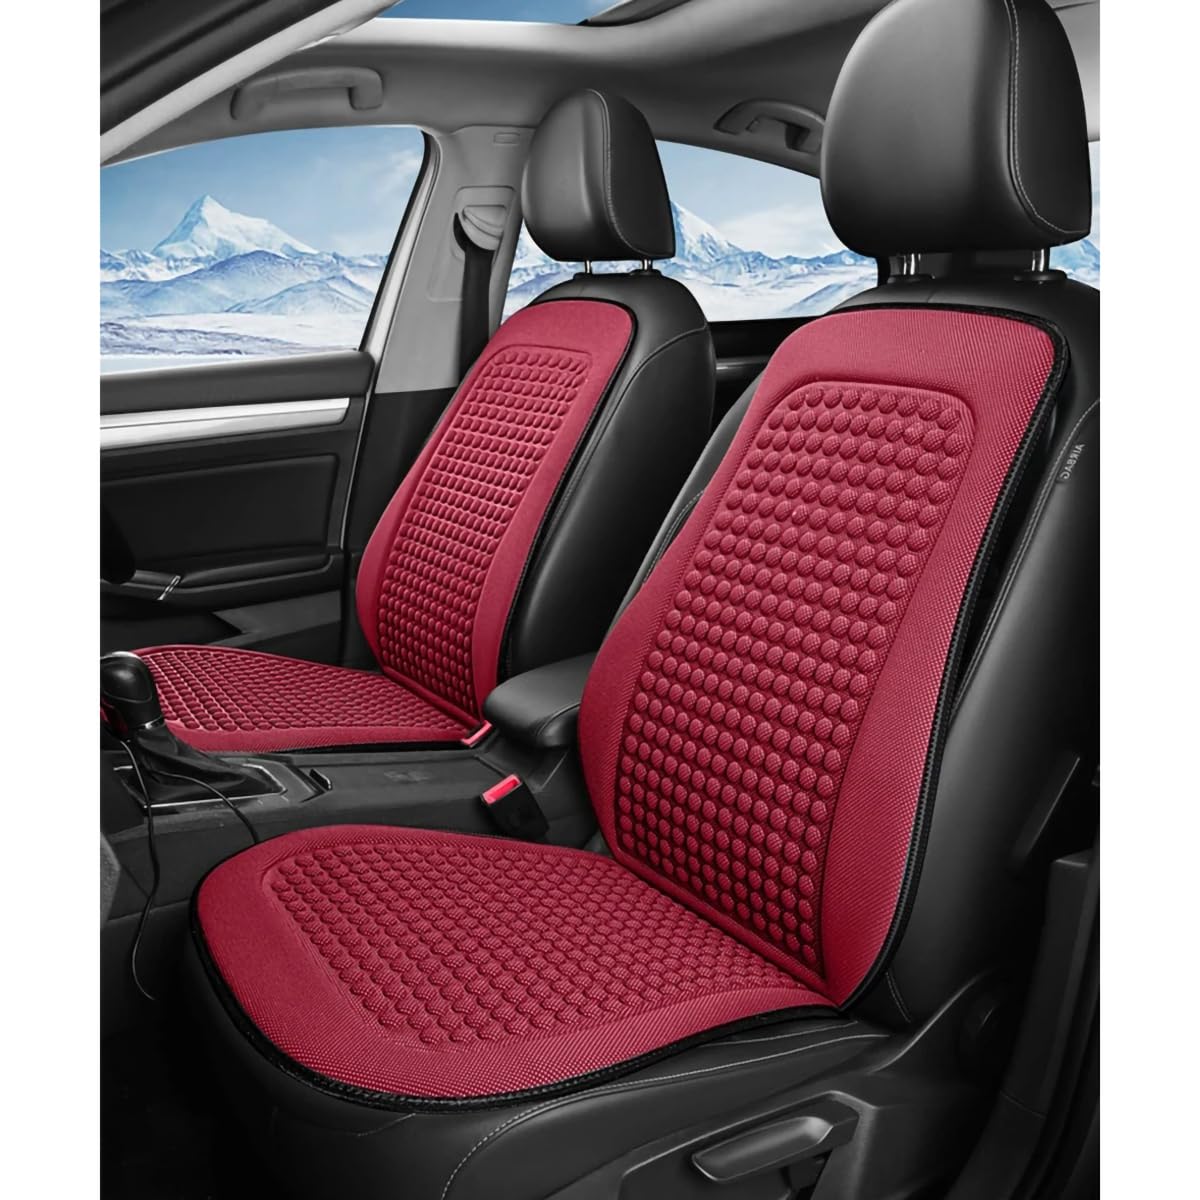 Spulhc Autositzbezug für BMW X6 E71 2008 2009 2010 2011 2012 2013 2014, kühles Sitzkissen aus Eisseide, kühlendes/atmungsaktives Kissen,C-red-2 set von Spulhc